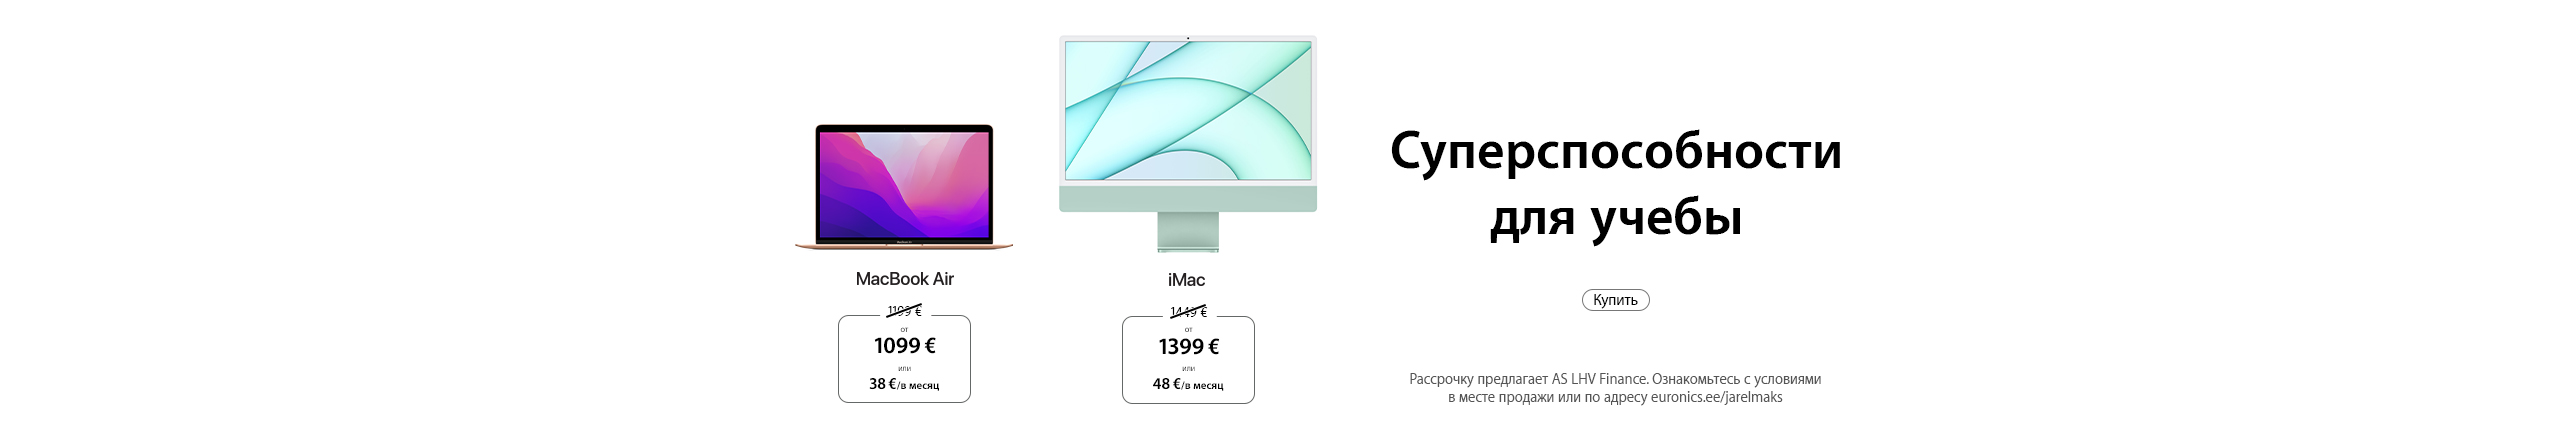 Cпециальное предложения Apple. Купите новое устройство для учебы. MacBook Air и iMac